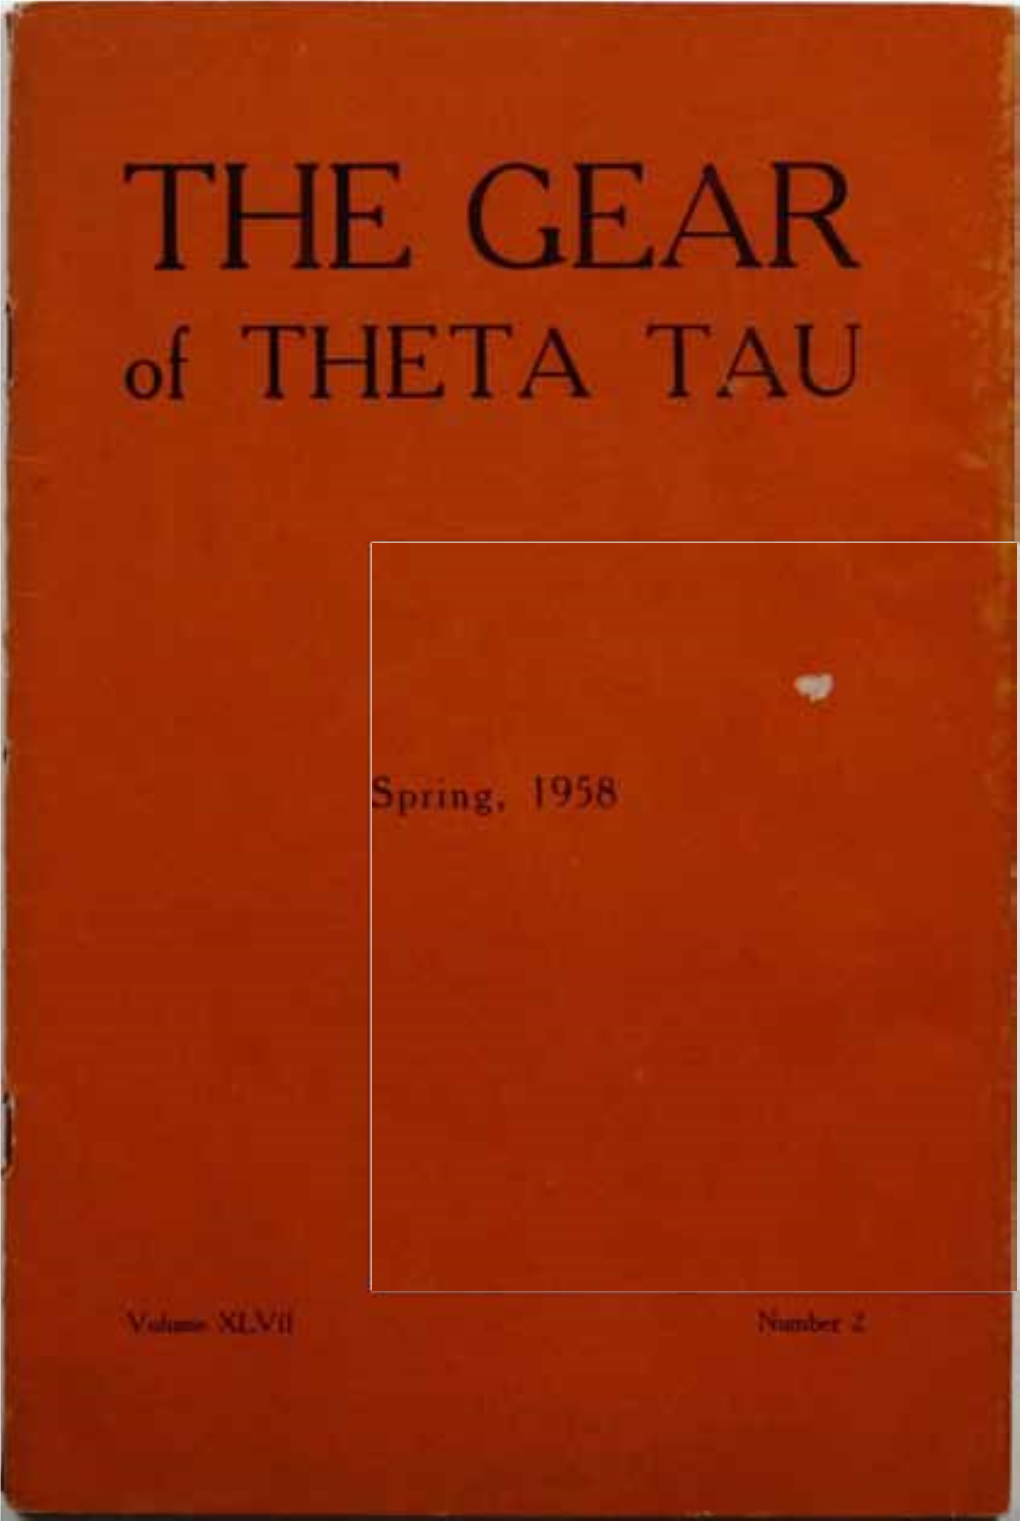 THE GEAR of THETA TAU